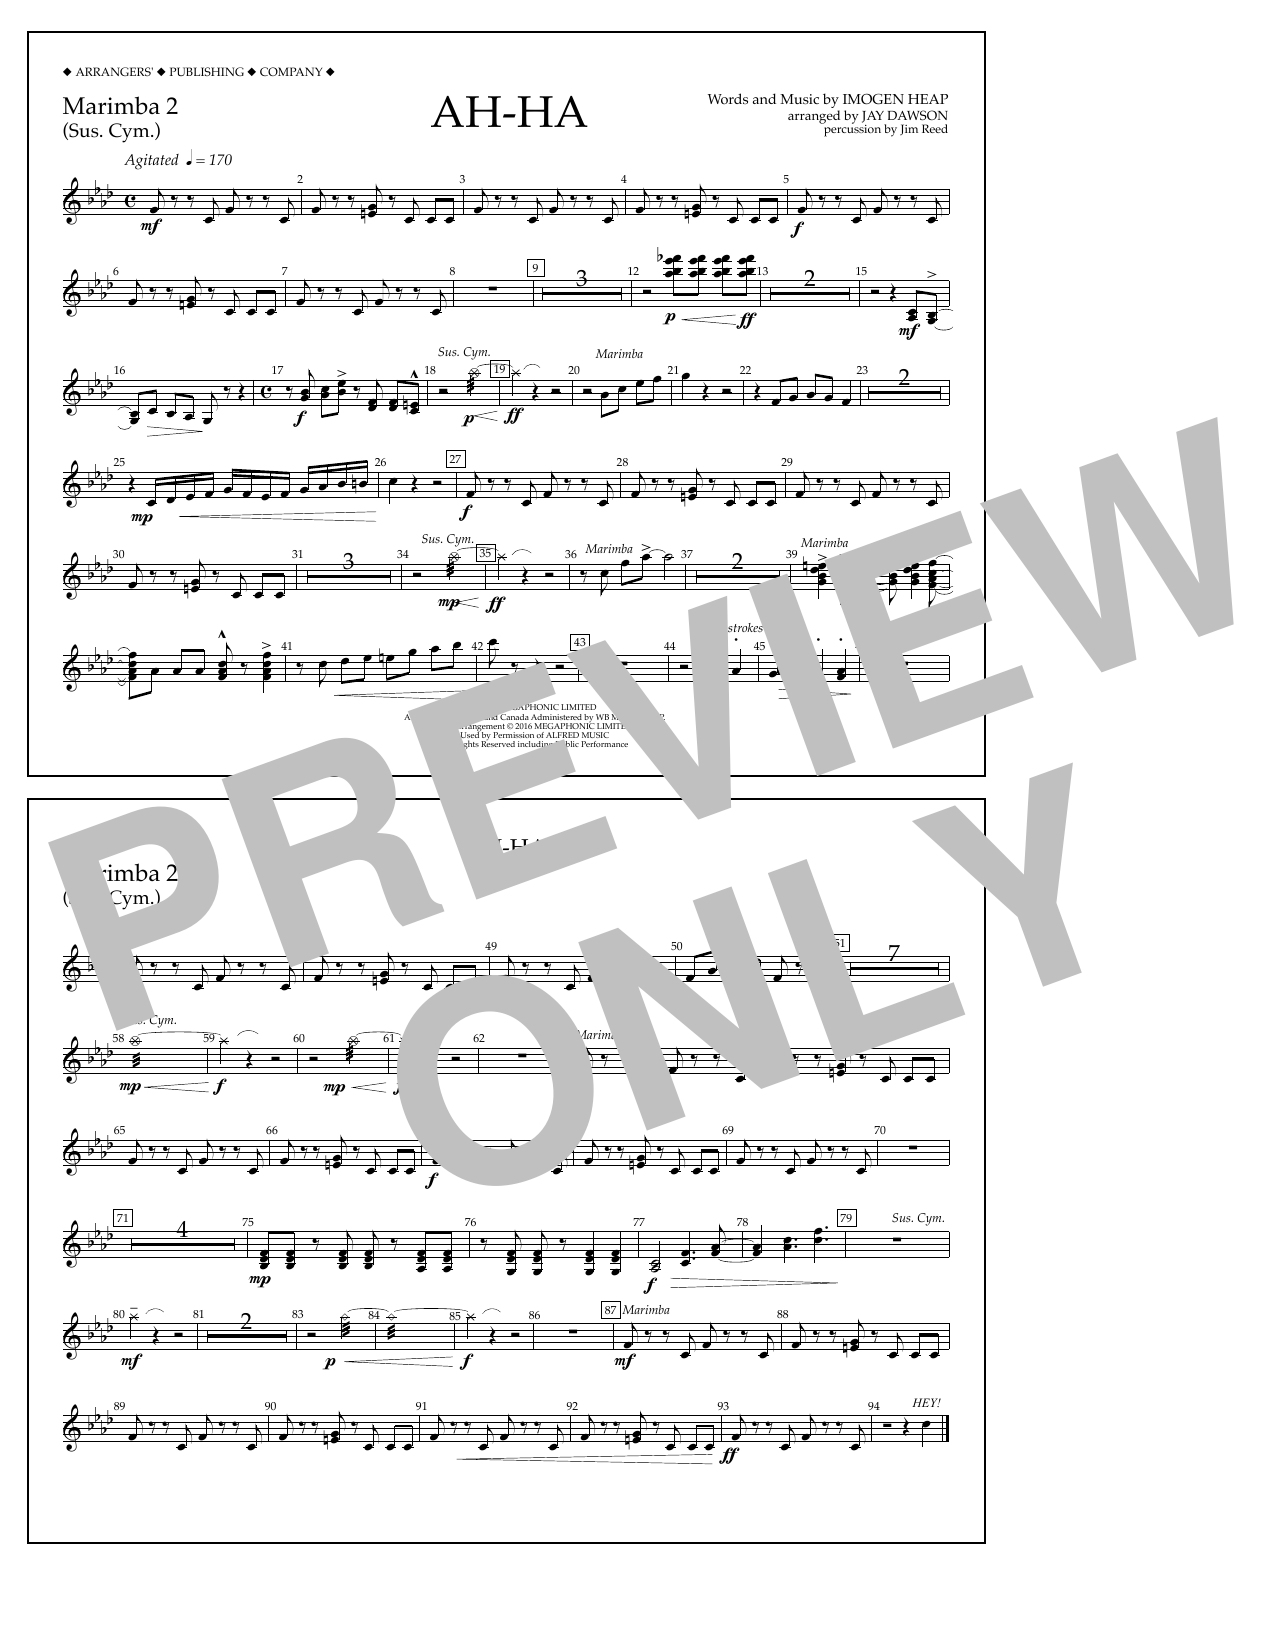 Jay Dawson Ah-ha - Marimba 2 Sheet Music Notes & Chords for Marching Band - Download or Print PDF